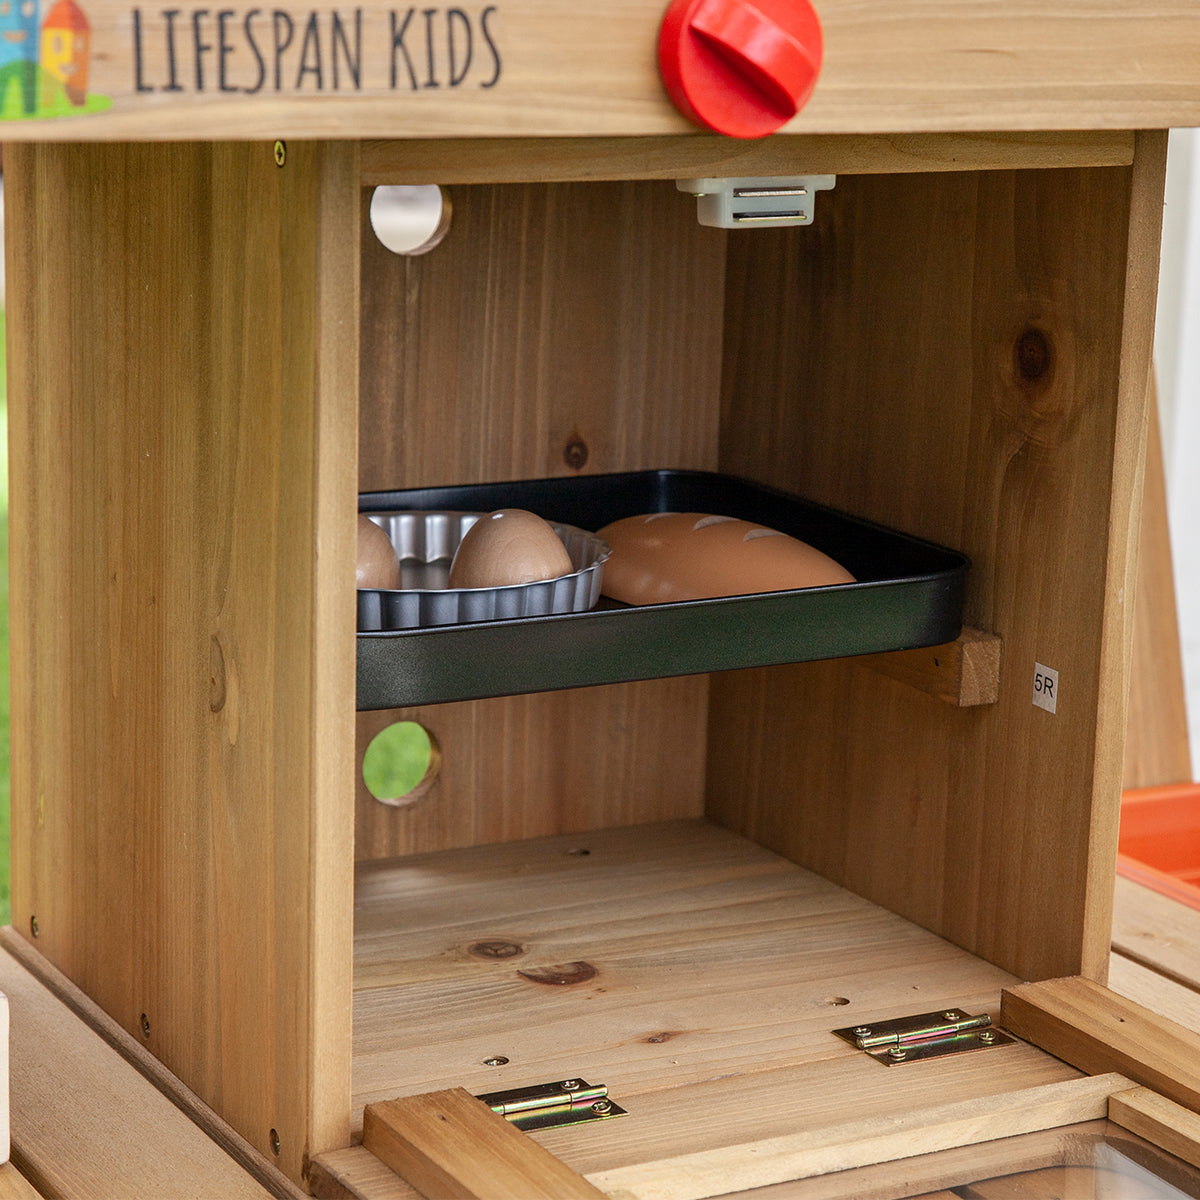 Lifespan Alfresco Mobile Play Kitchen